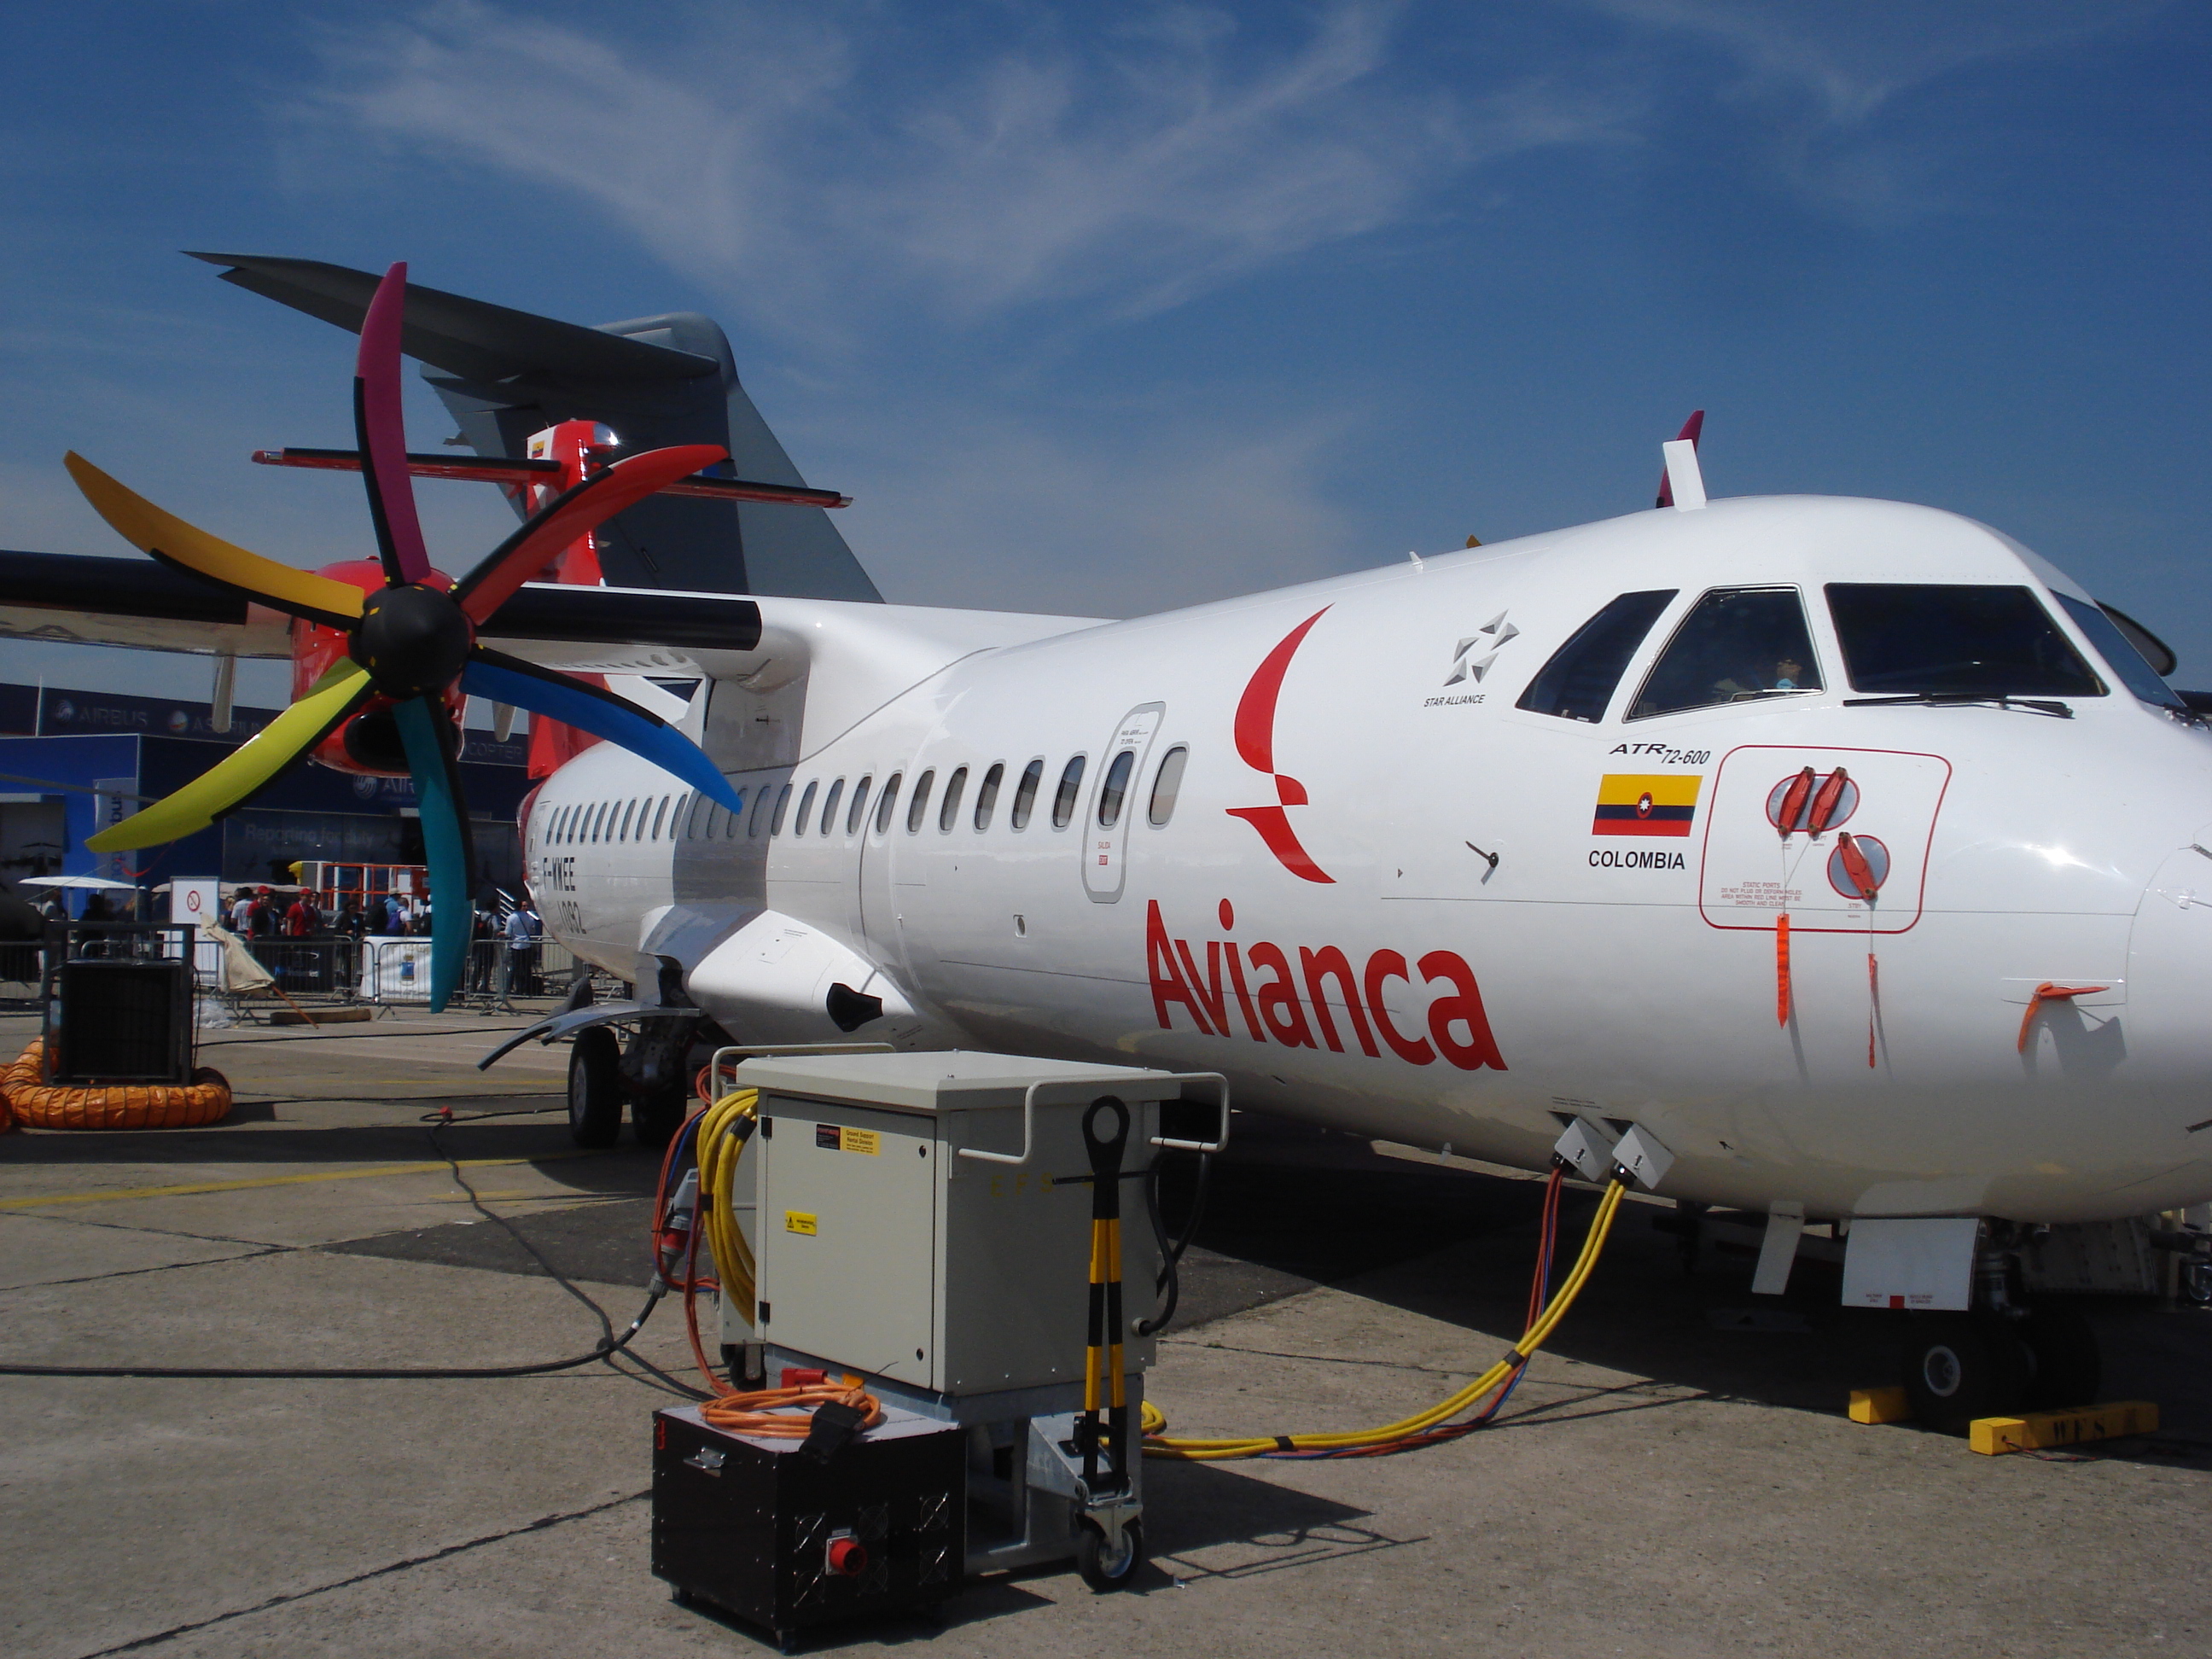 ATR ATR-72 next